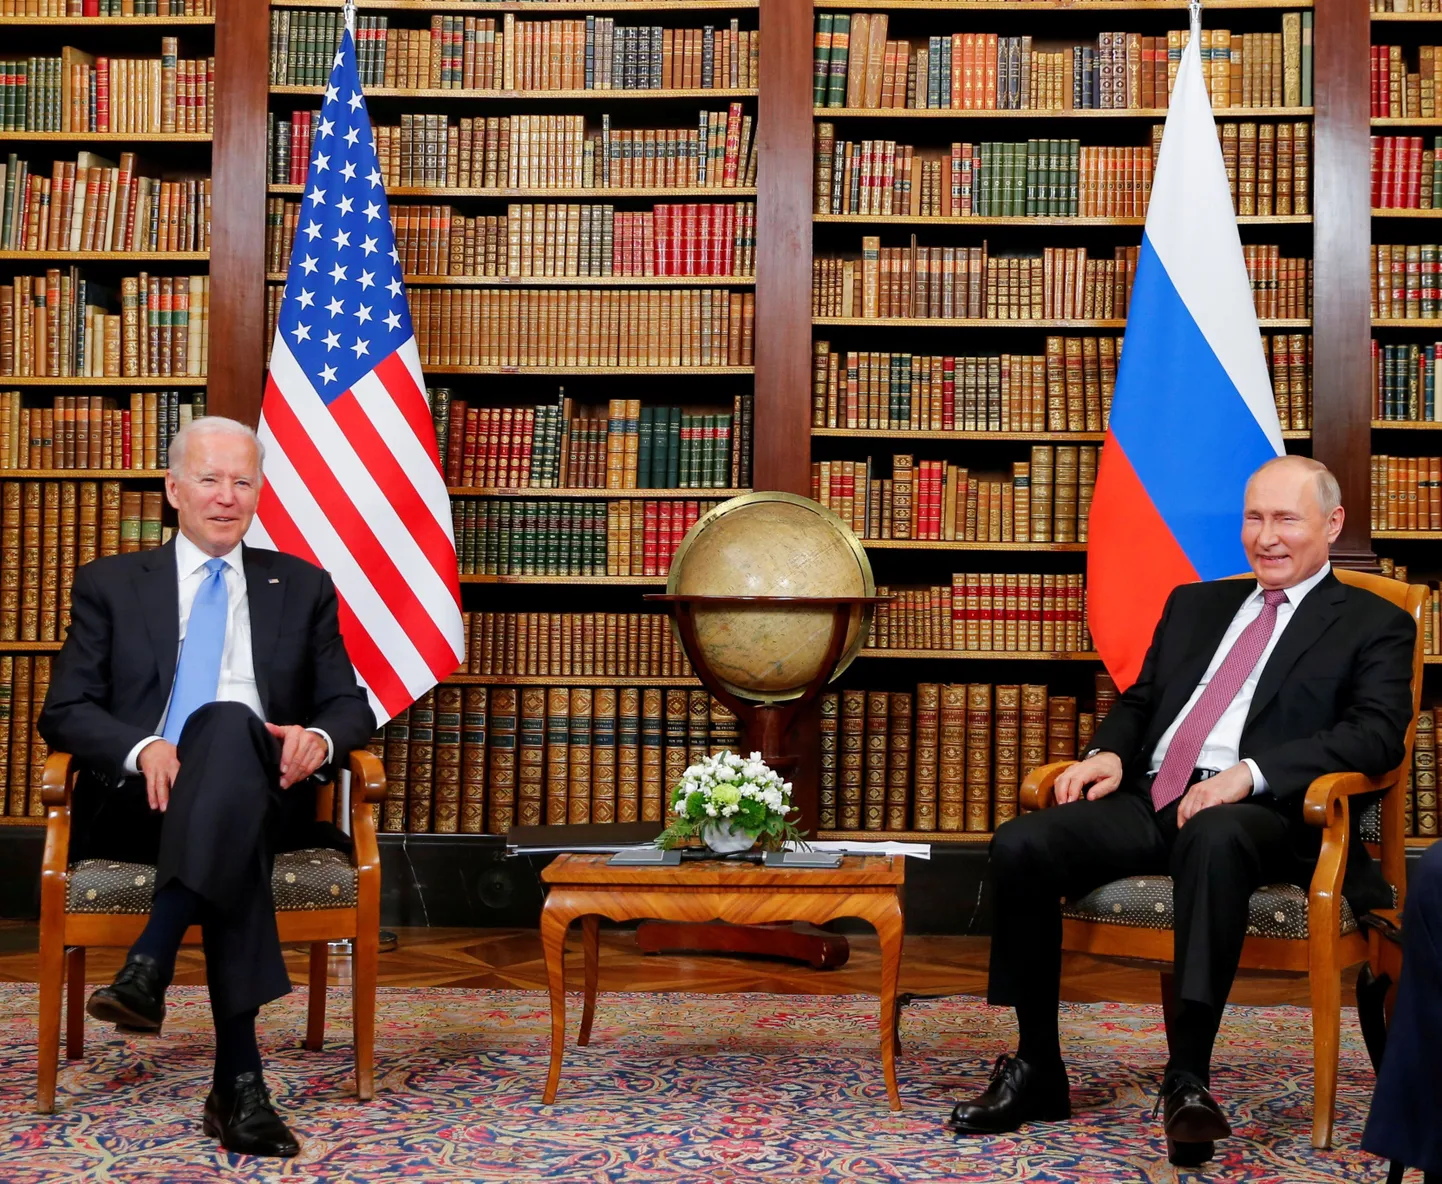 Джо Байден и Владимир Путин во время встречи в Женеве.